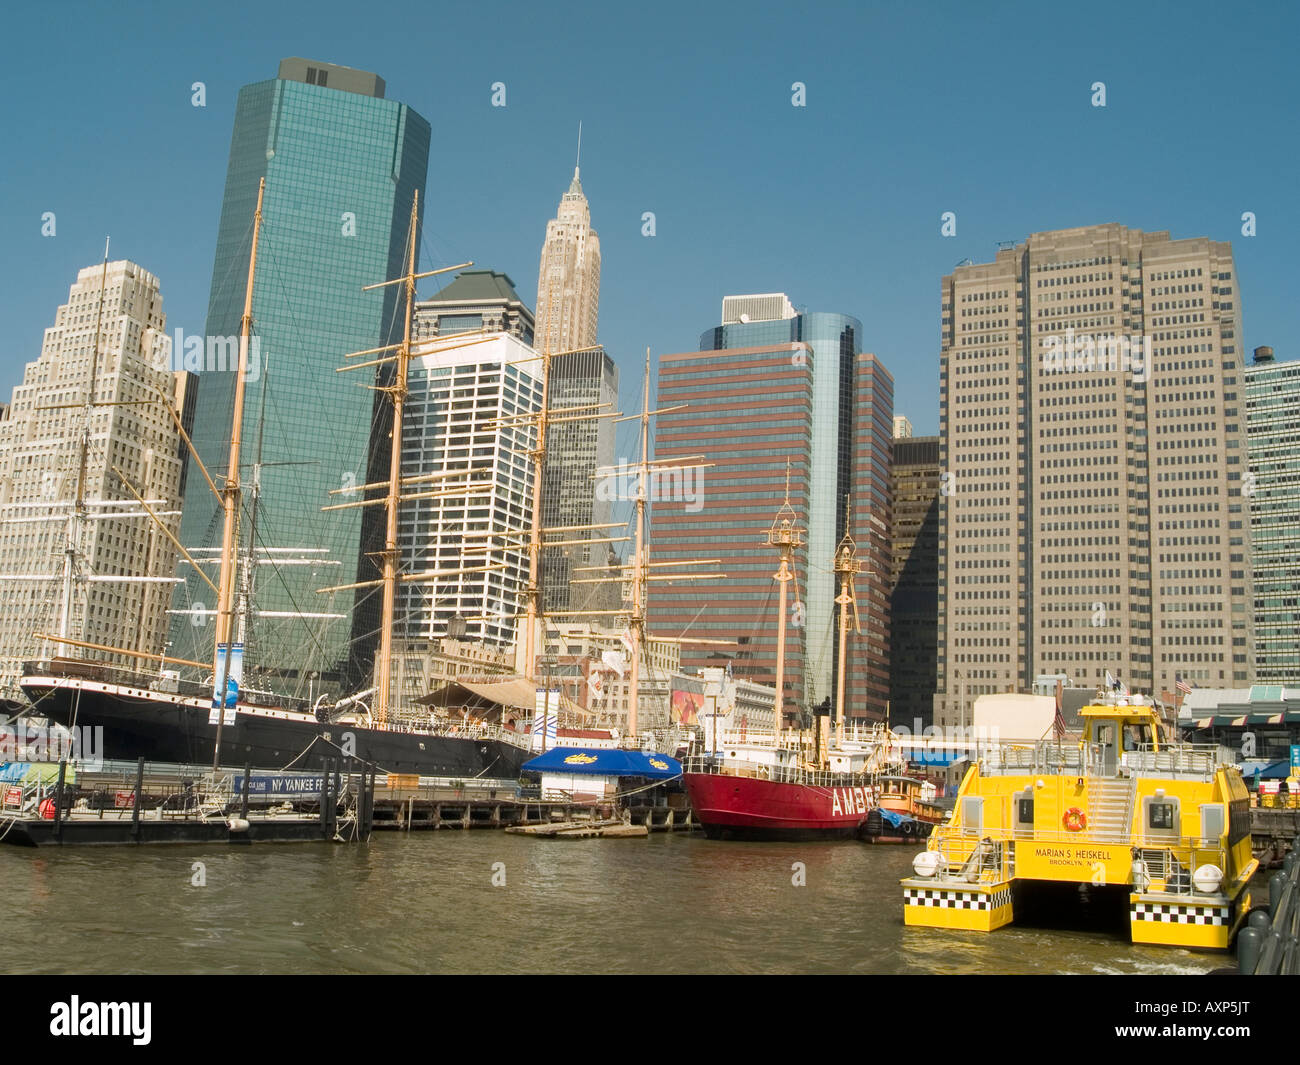 Un contraste de vieille répond à de nouvelles avec des navires et gratte-ciel dans la région de South Street Seaport de New York USA Banque D'Images